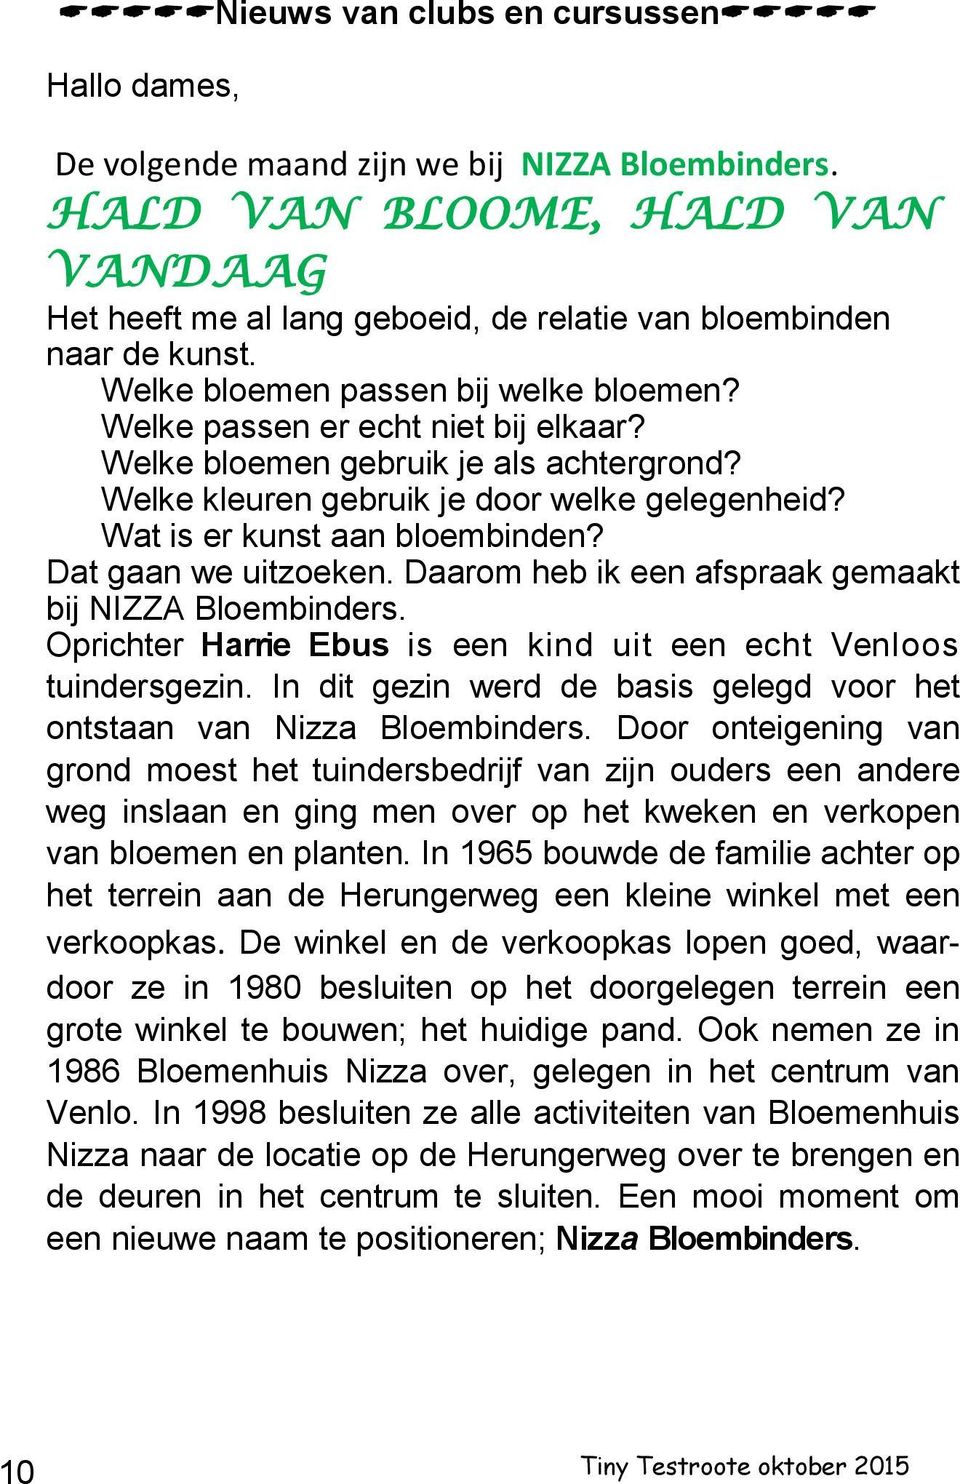 Wat is er kunst aan bloembinden? Dat gaan we uitzoeken. Daarom heb ik een afspraak gemaakt bij NIZZA Bloembinders. Oprichter Harrie Ebus is een kind uit een echt Venloos tuindersgezin.